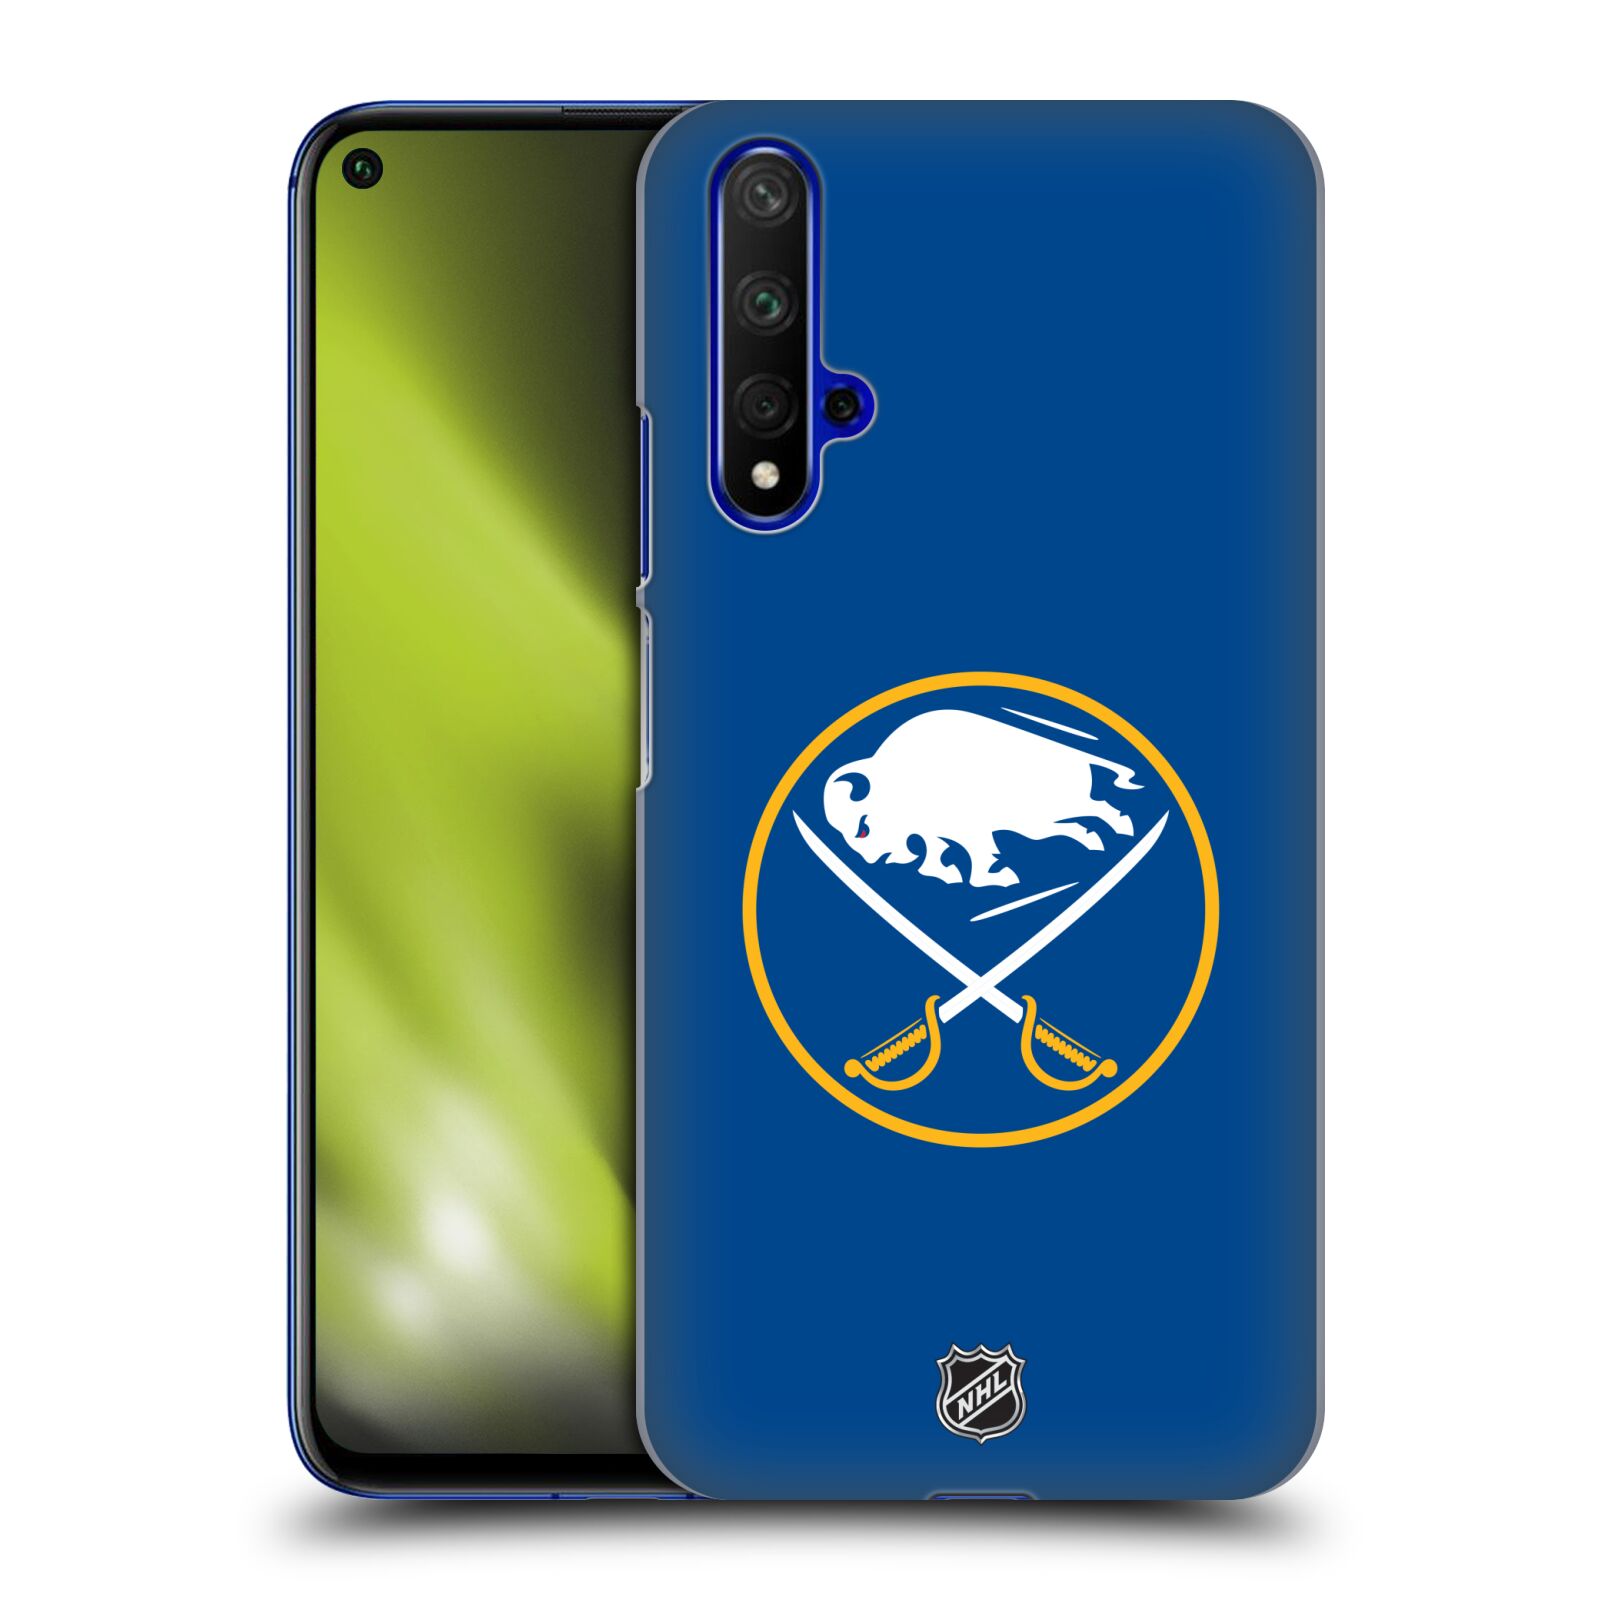 Pouzdro na mobil HONOR 20 - HEAD CASE - Hokej NHL - Buffalo Sabres - modré pozadí